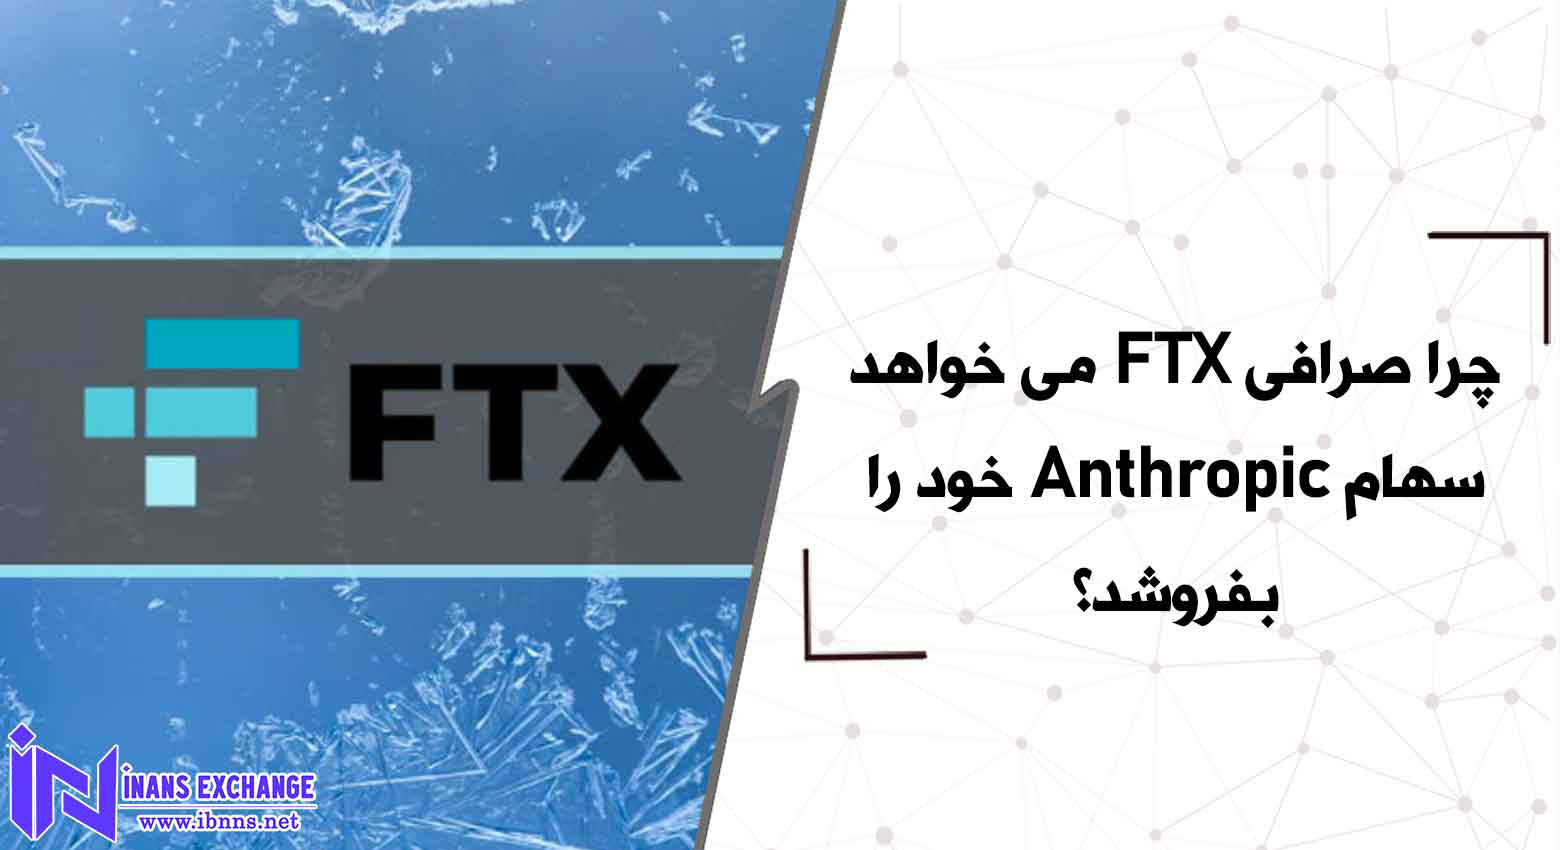  چرا صرافی FTX می خواهد سهام Anthropic خود را بفروشد؟